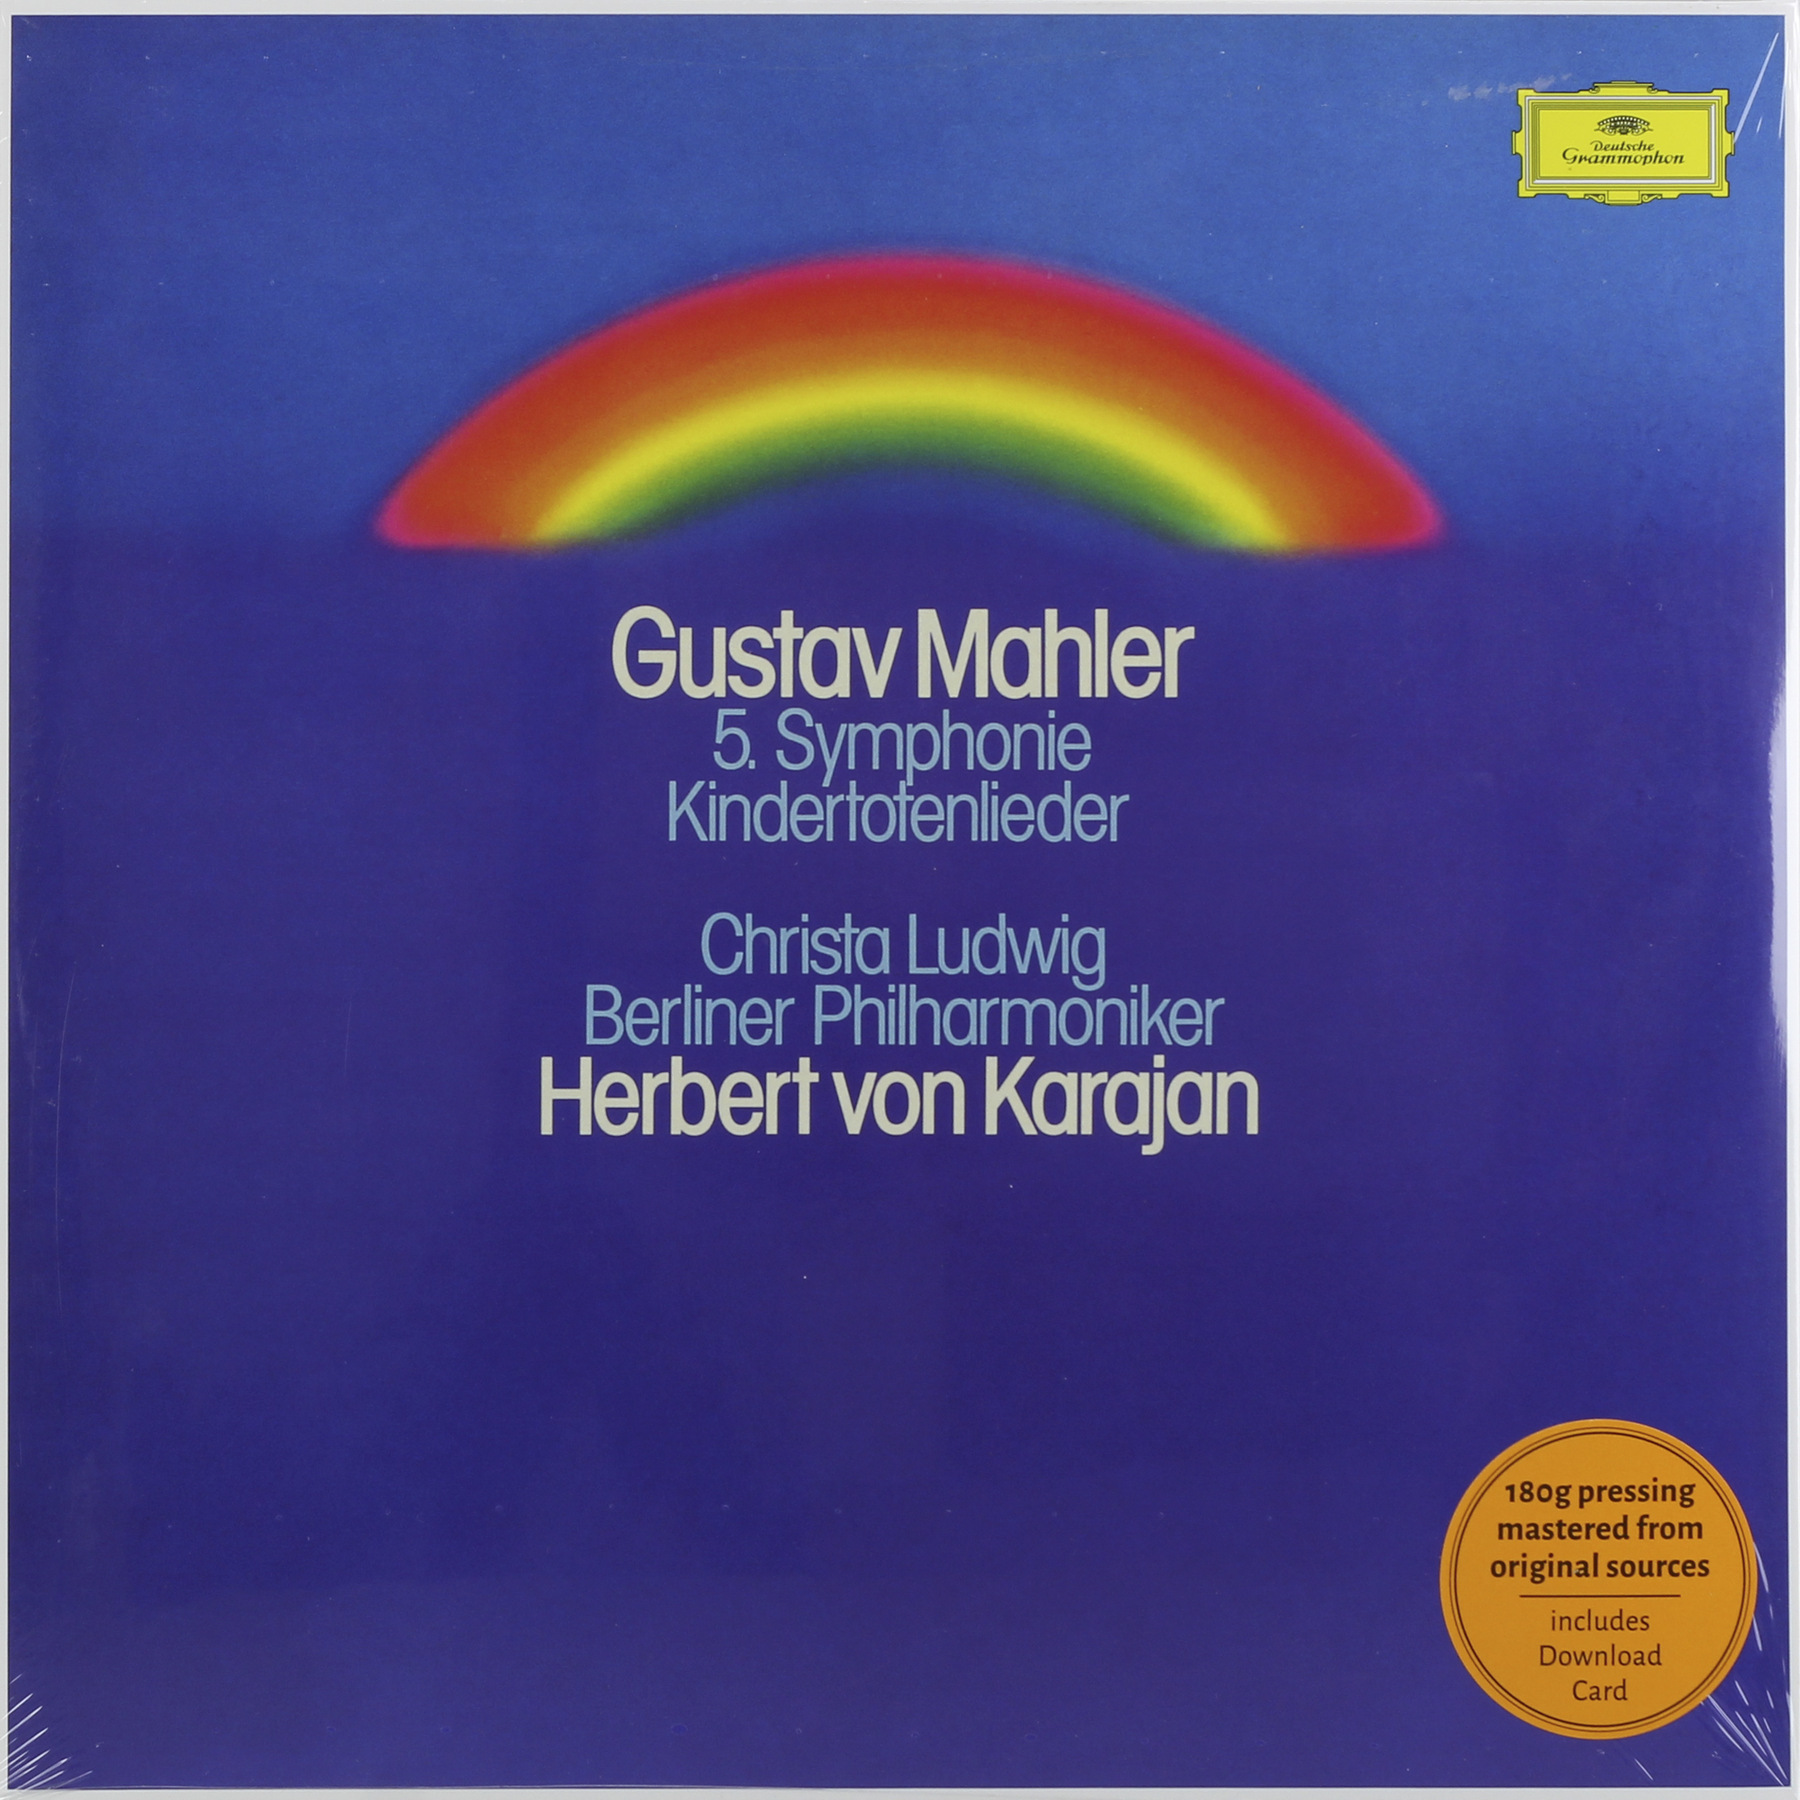 Herbert von Karajan, Berliner Philharmoniker ‎- Mahler: Symphony №5 (479 7216)